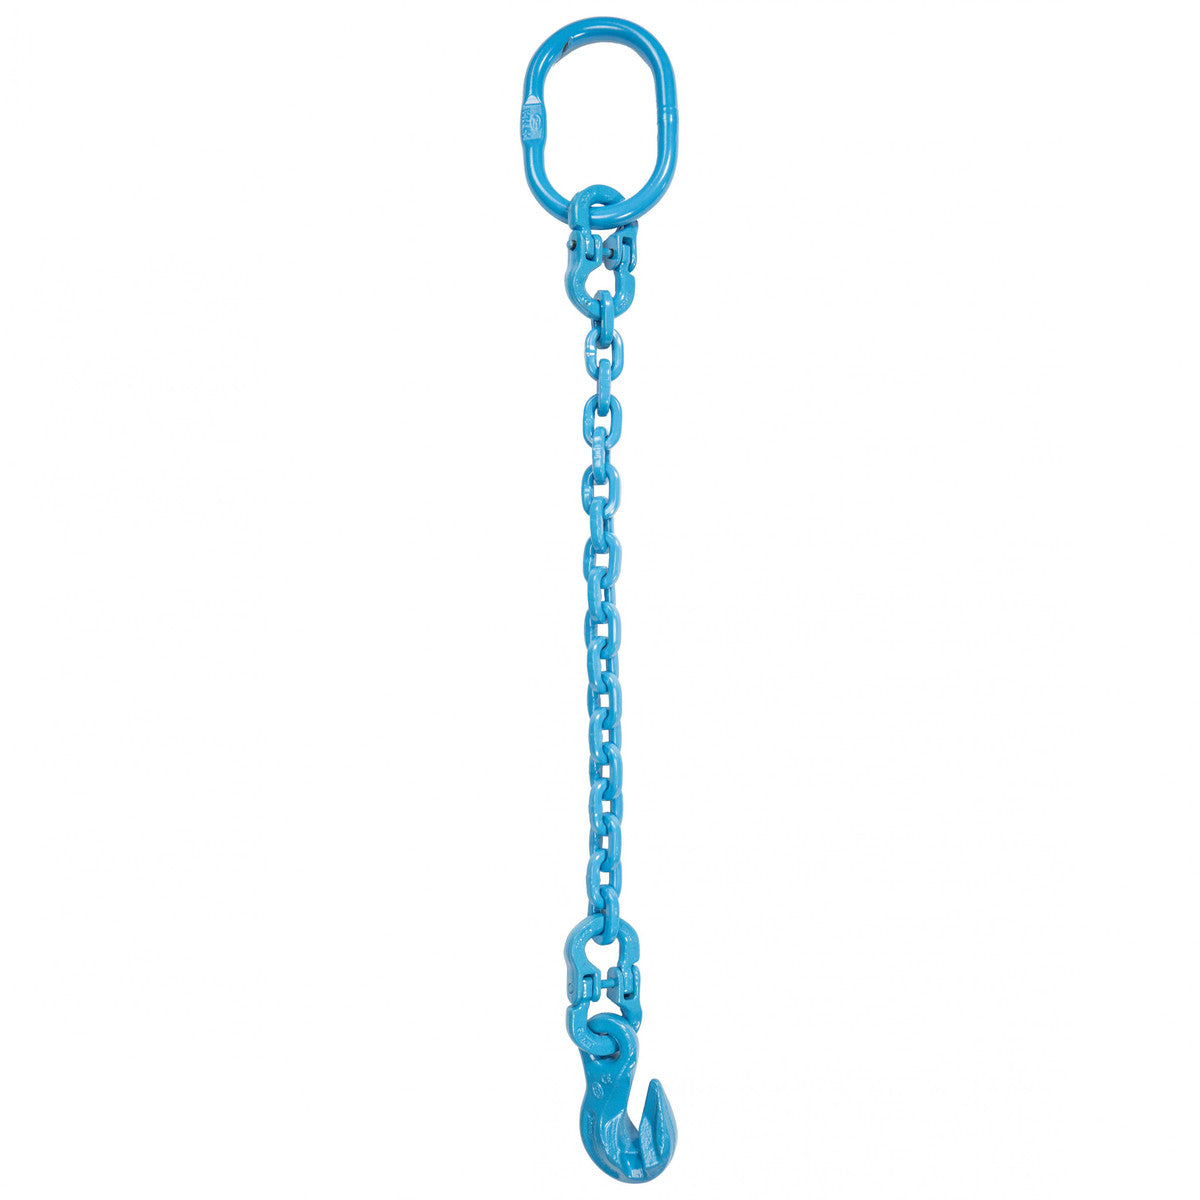 9/32" x 6' - Pewag Single Leg Chain Sling w/ Grab Hook - Grade 120